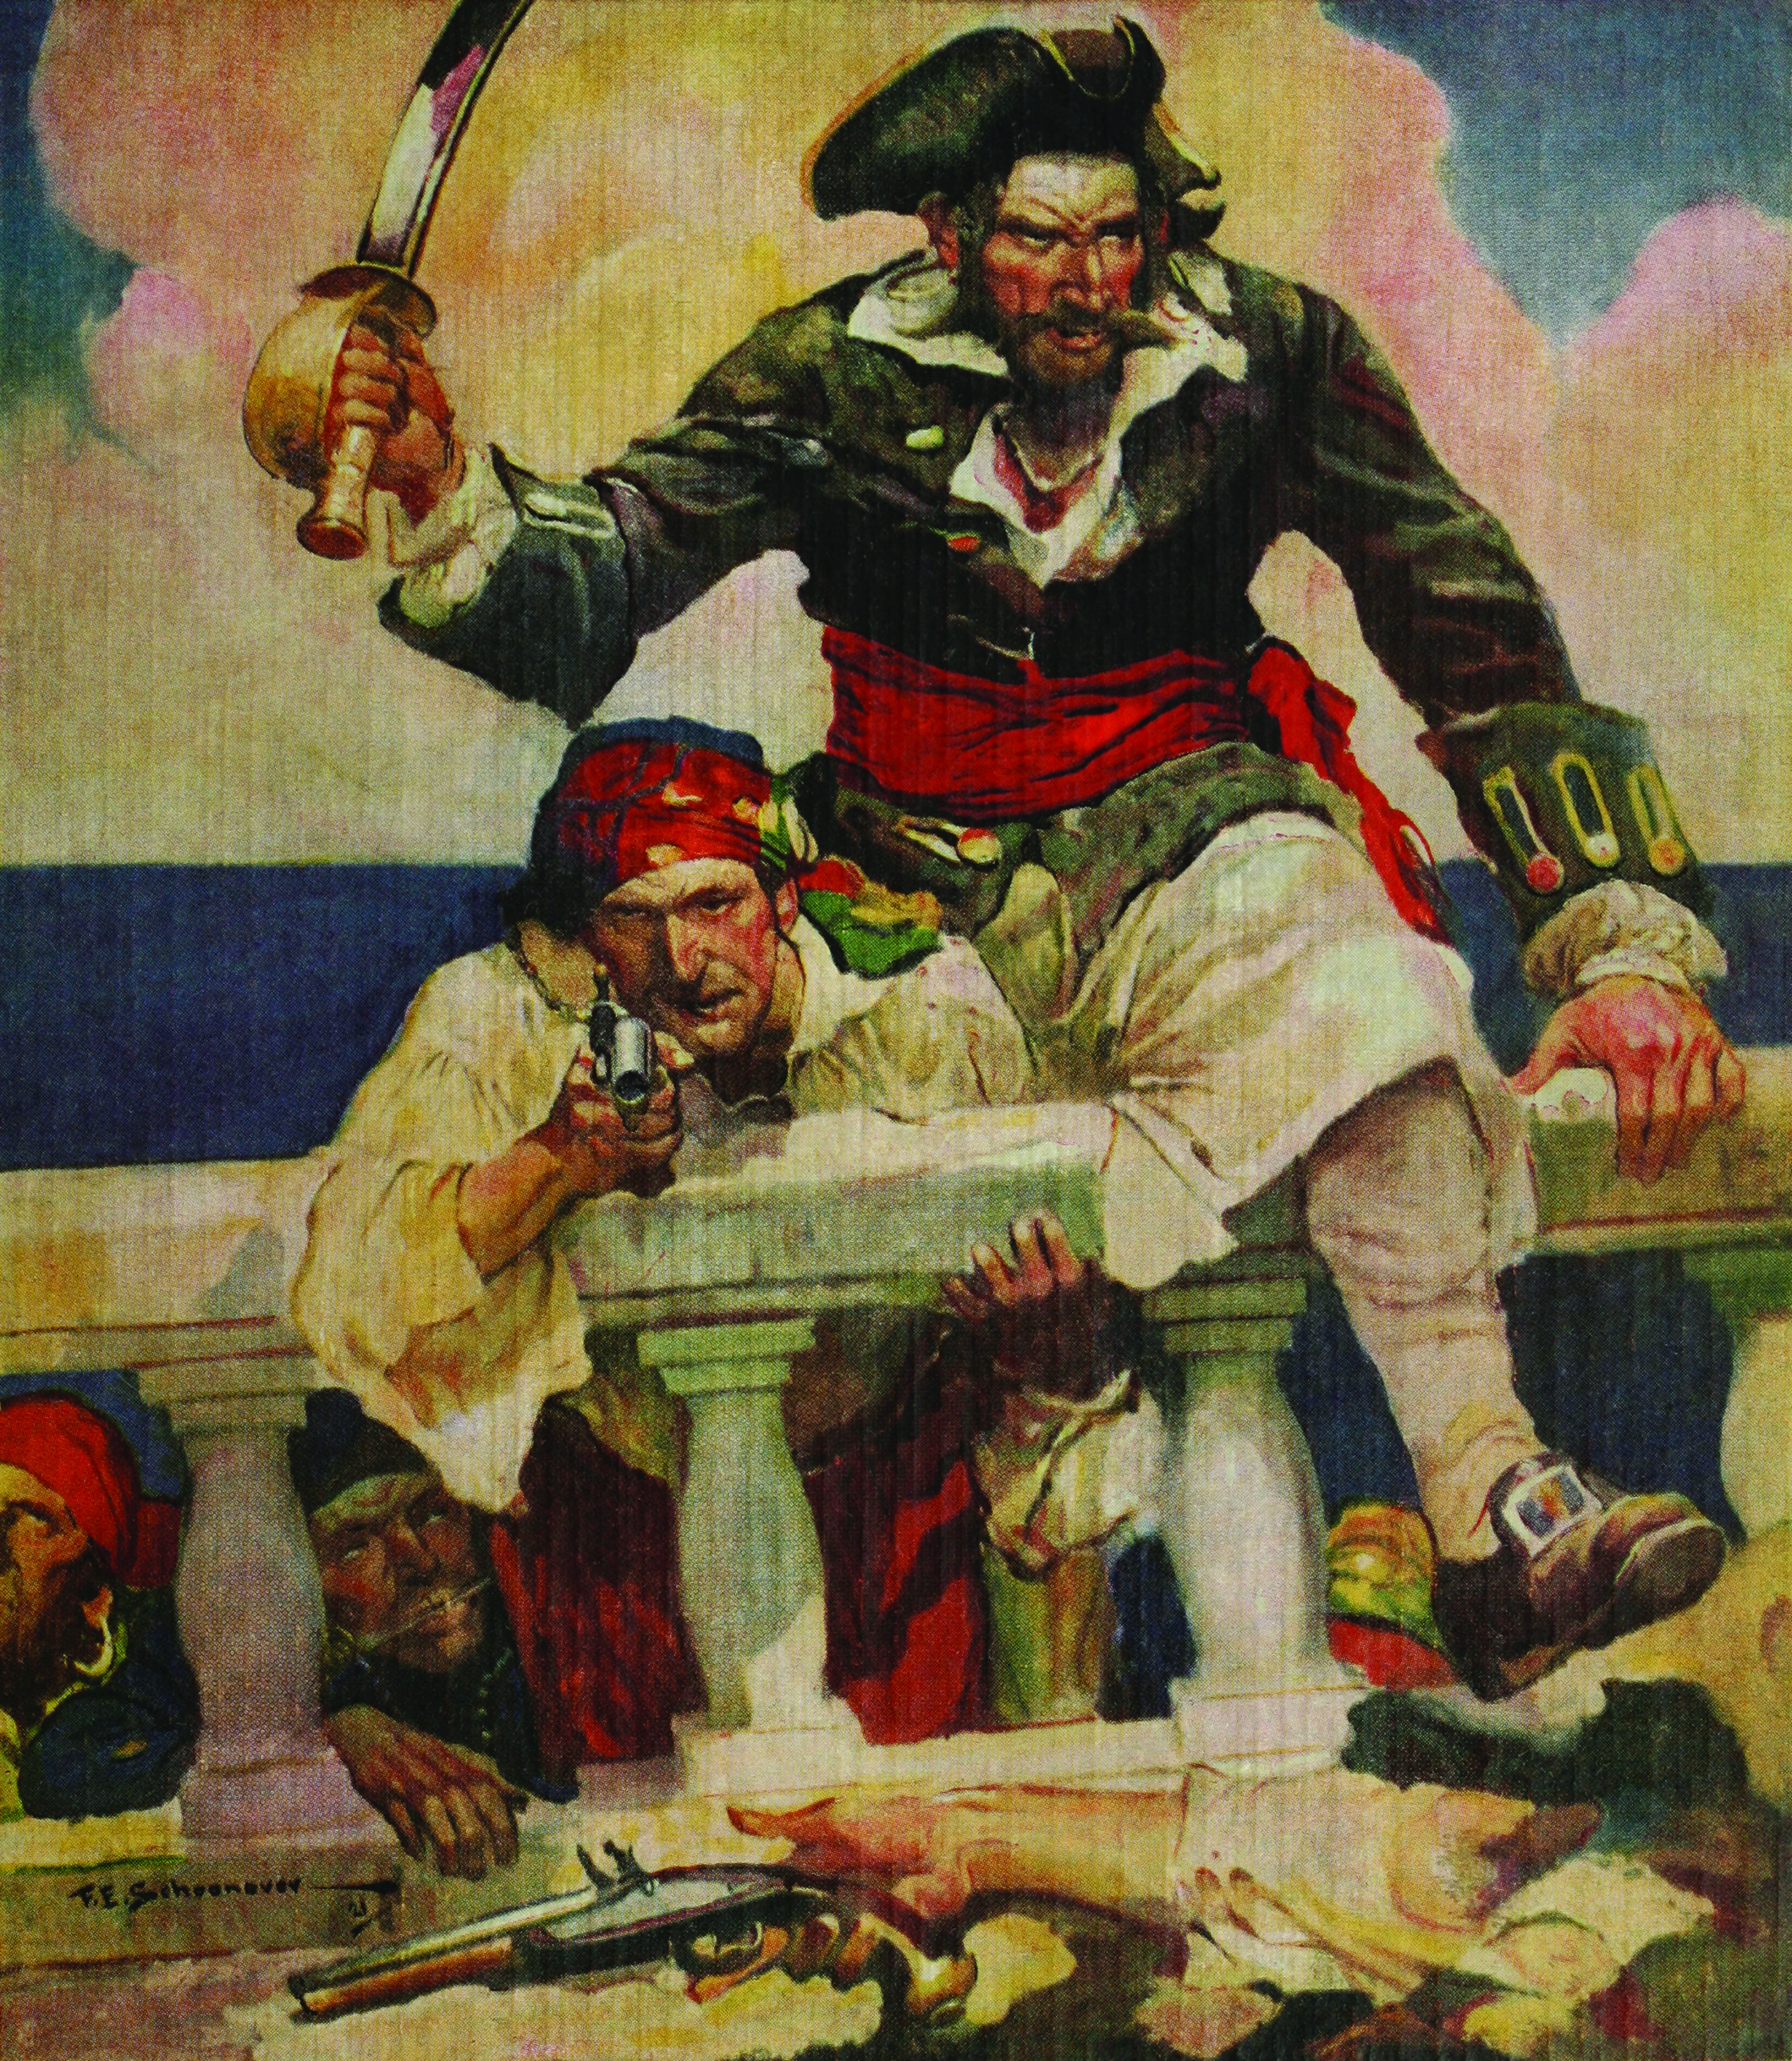 From Bonny to Blackbeard: South Carolina’s Golden Age of Piracy